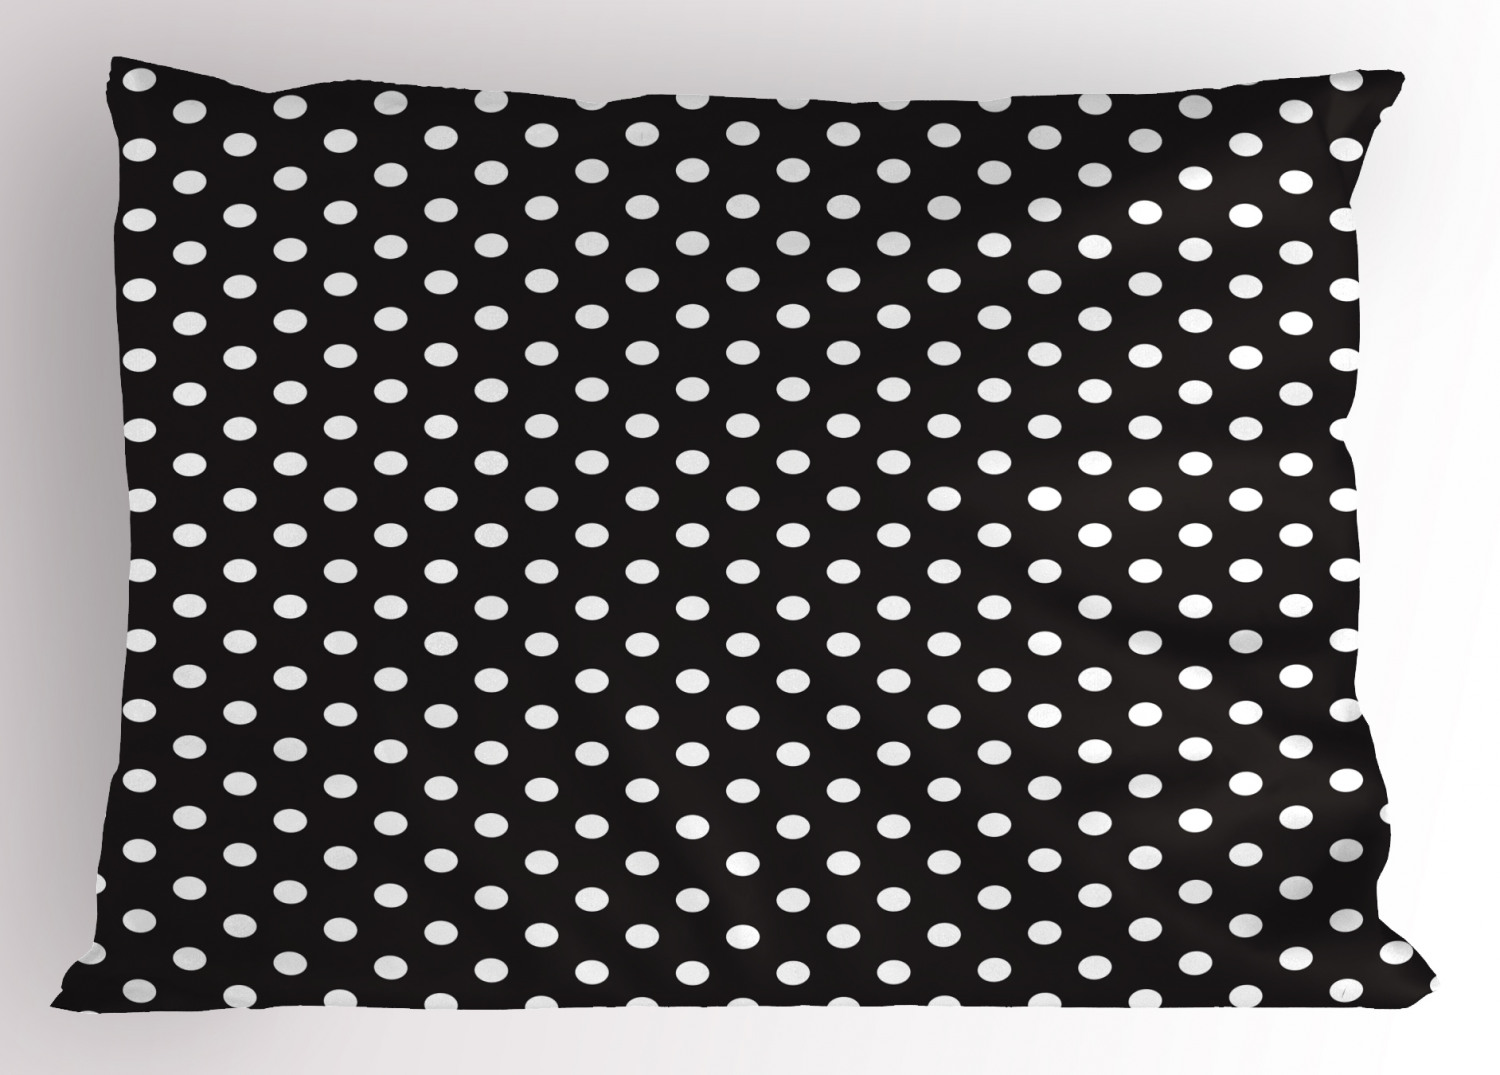 Details about   Monochrome Pillow Sham Decorative Pillowcase 3 Sizes Bedroom Decoration 